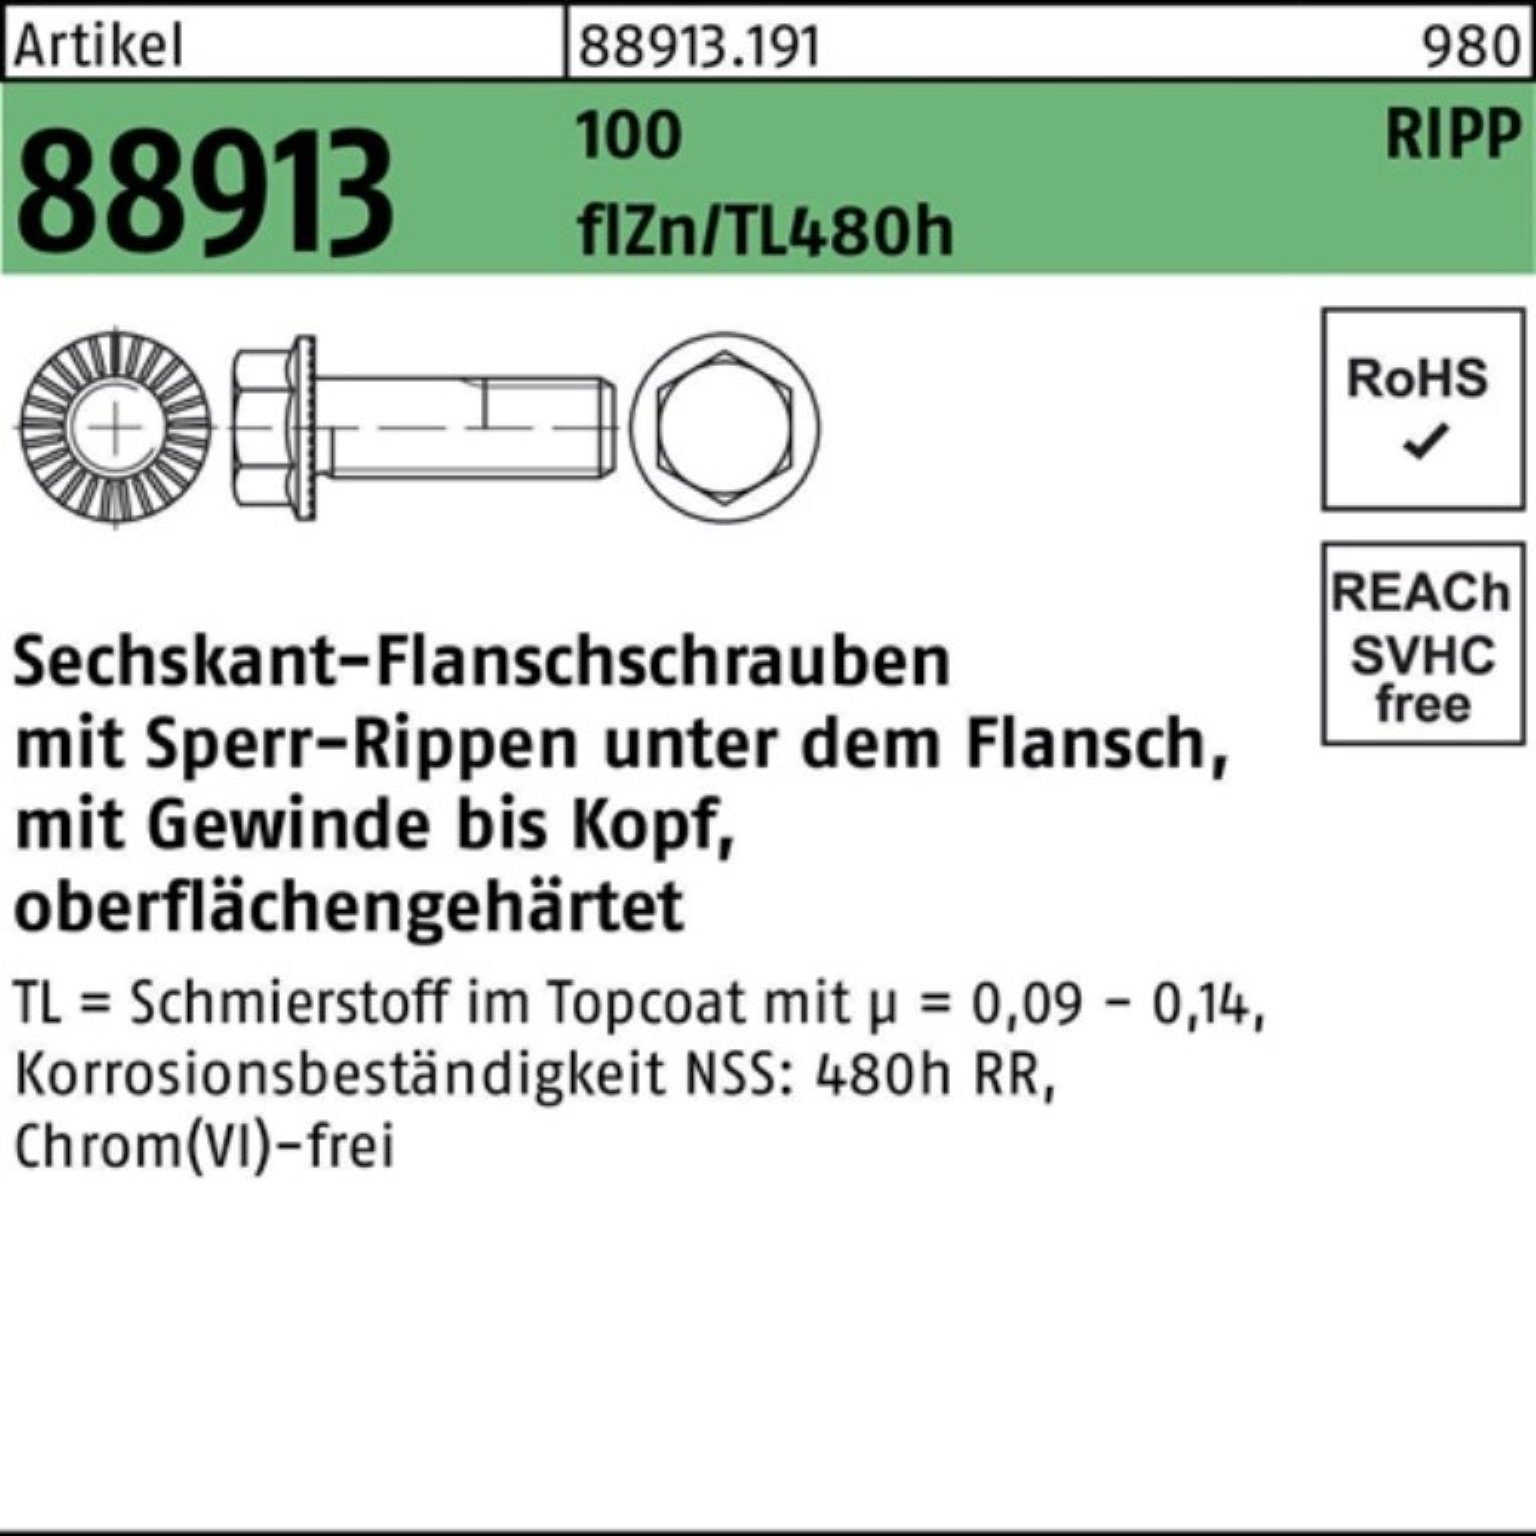 Reyher Schraube 100er Pack Sechskantflanschschraube R 88913 Sperr-Ripp VG M12x35 100 f